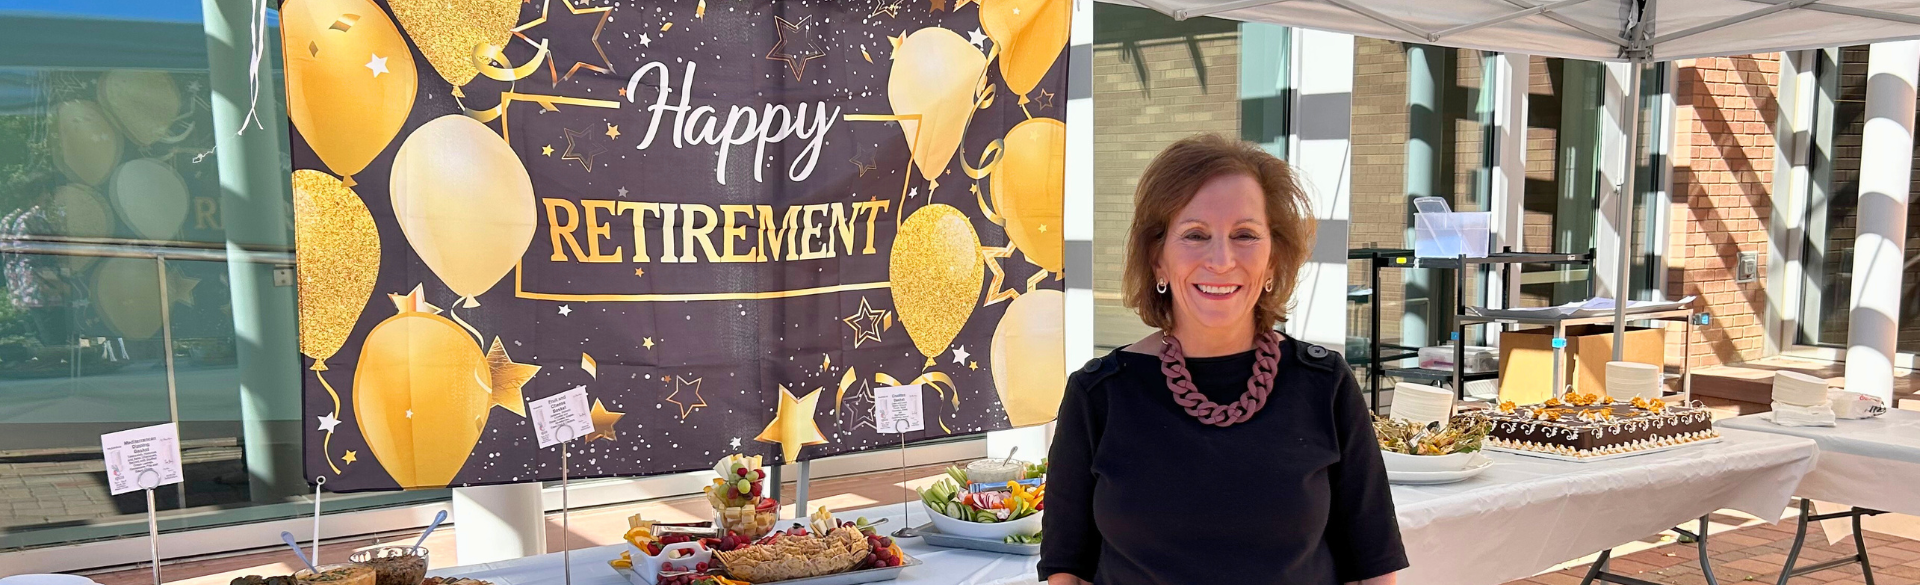 Terri Tilliss in front of a Happy Retirement banner